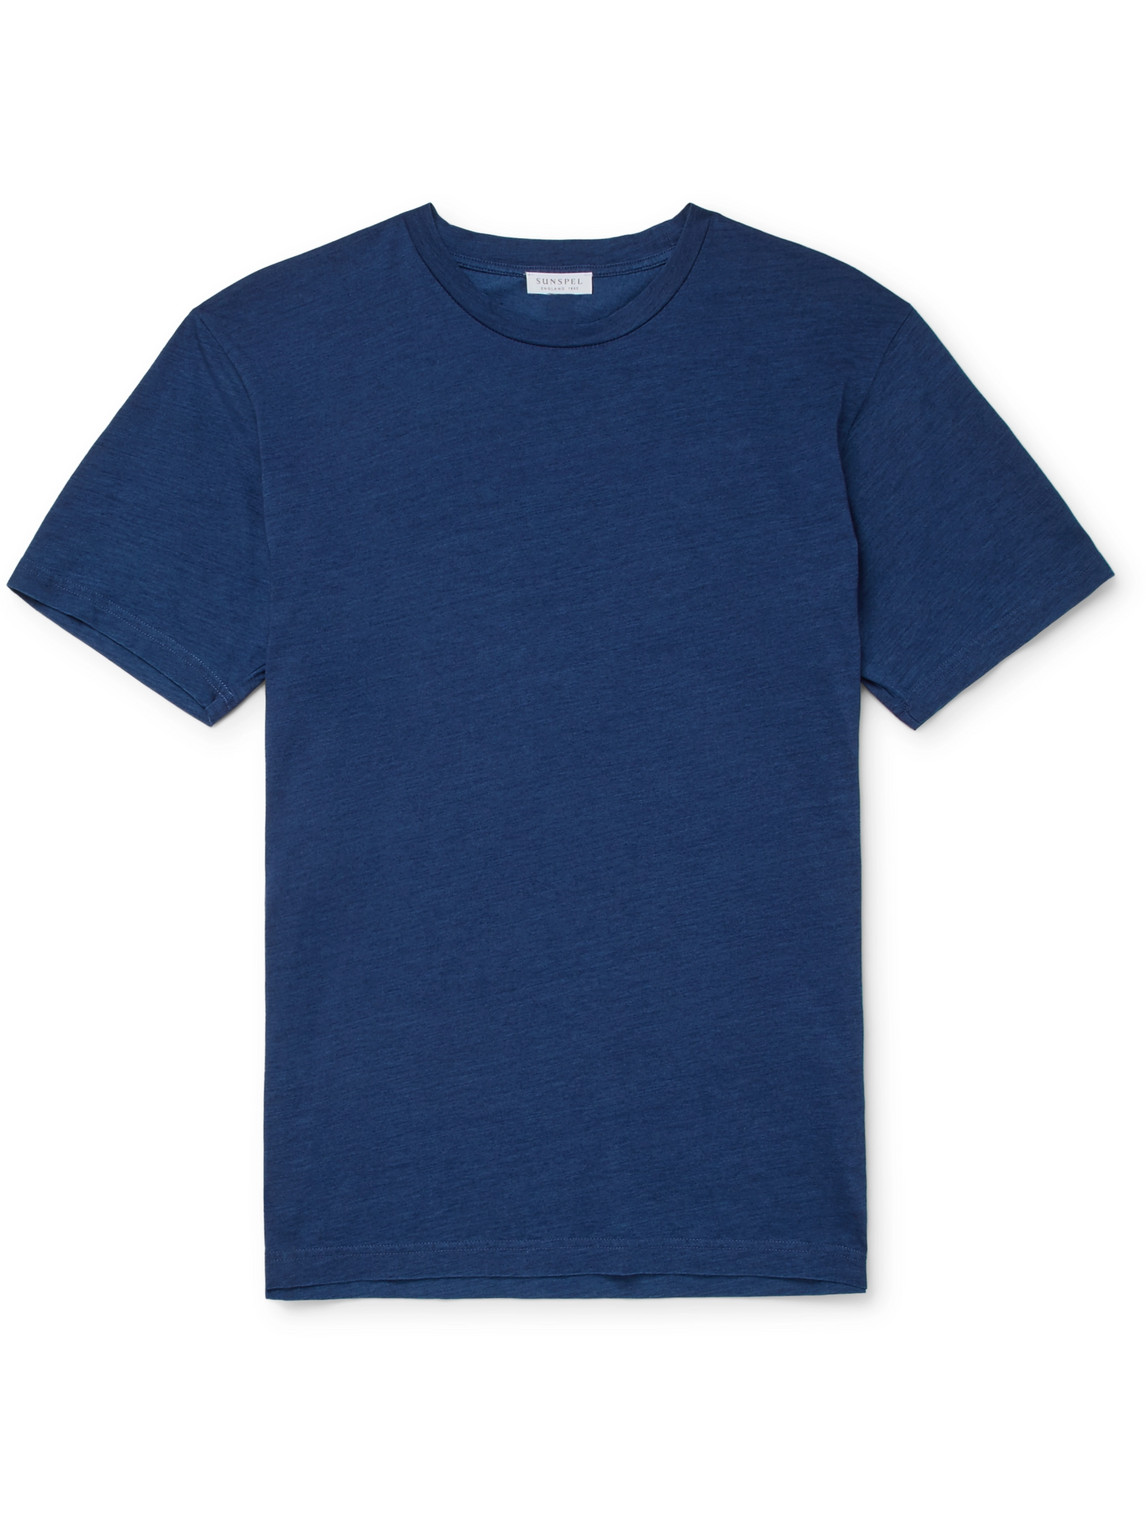 sunspel - indigo-dyed organic cotton-jersey t-shirt - men - blue - s